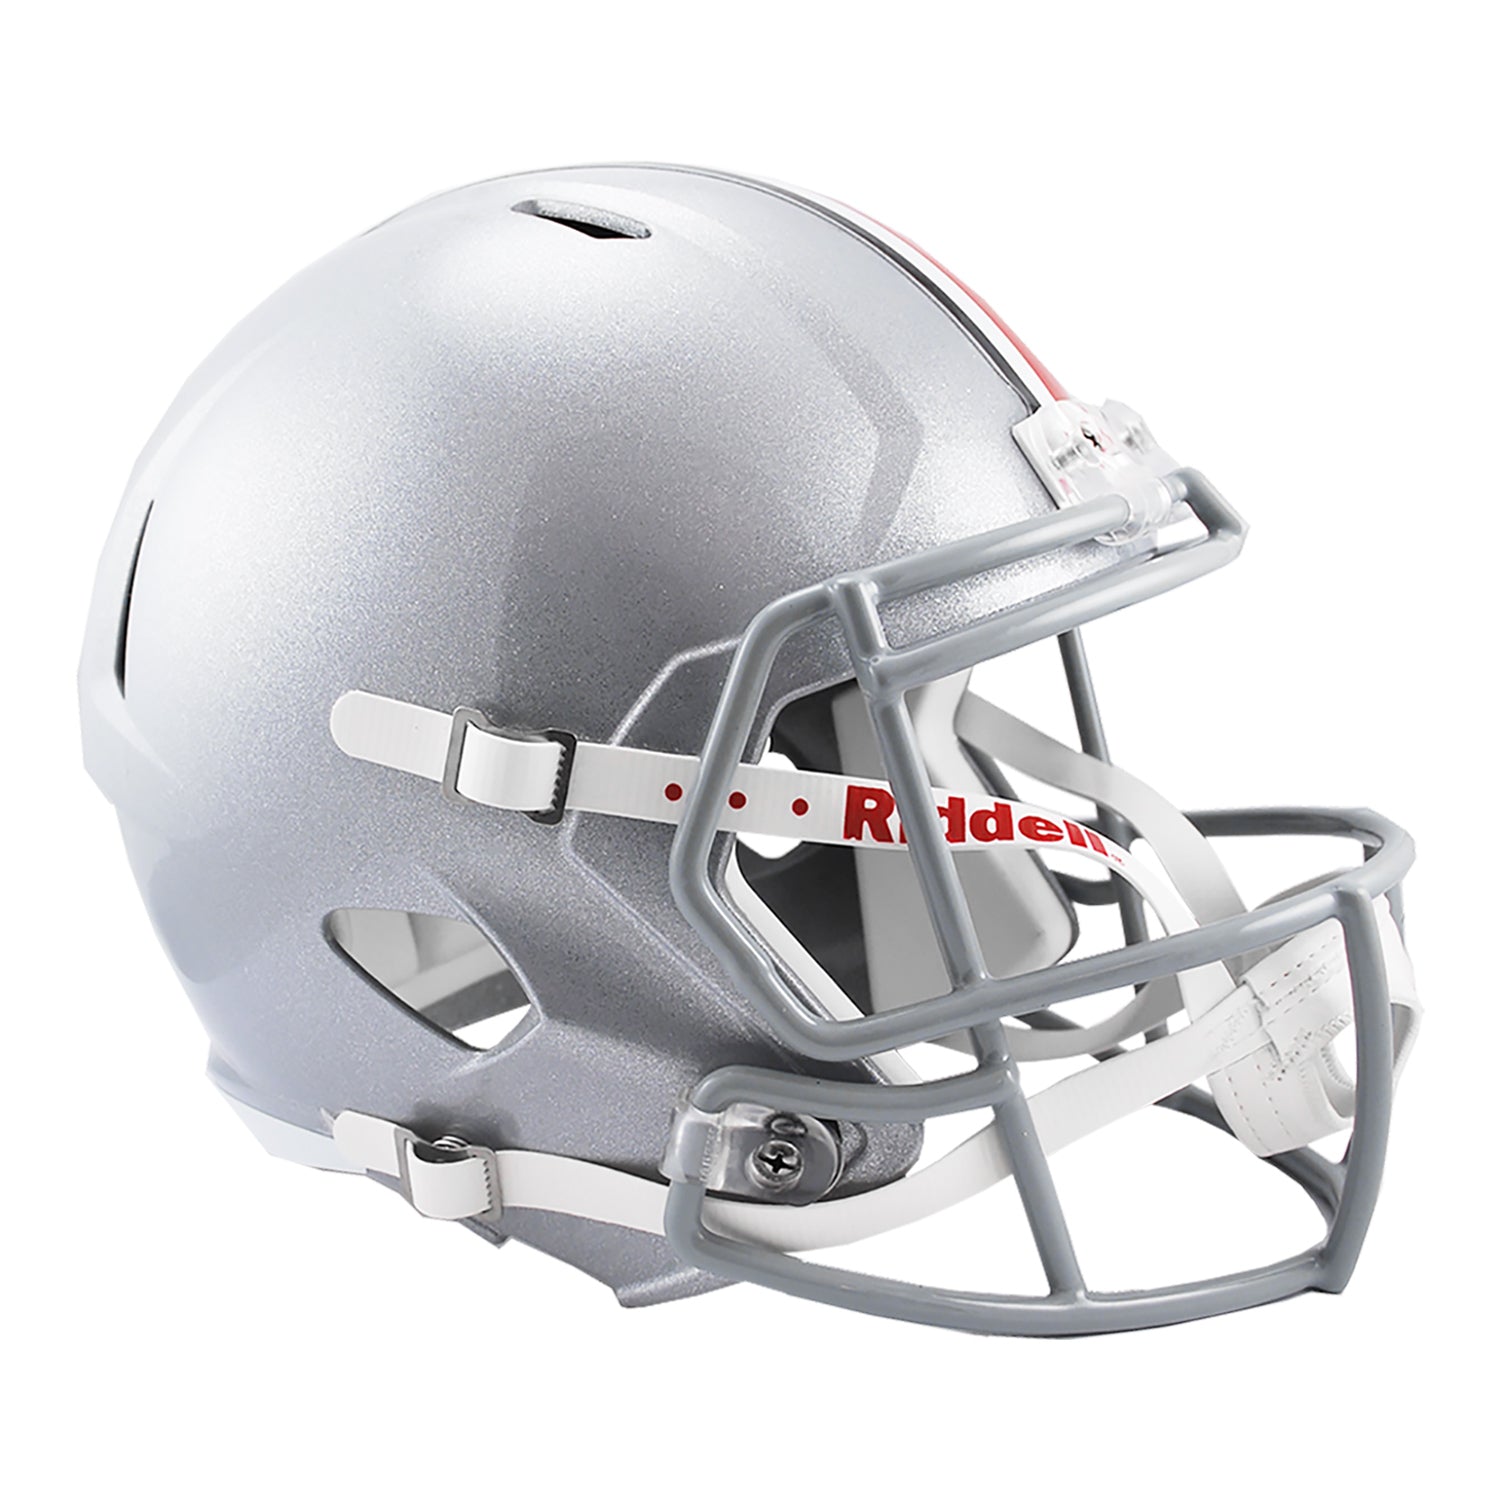 football helmet side view